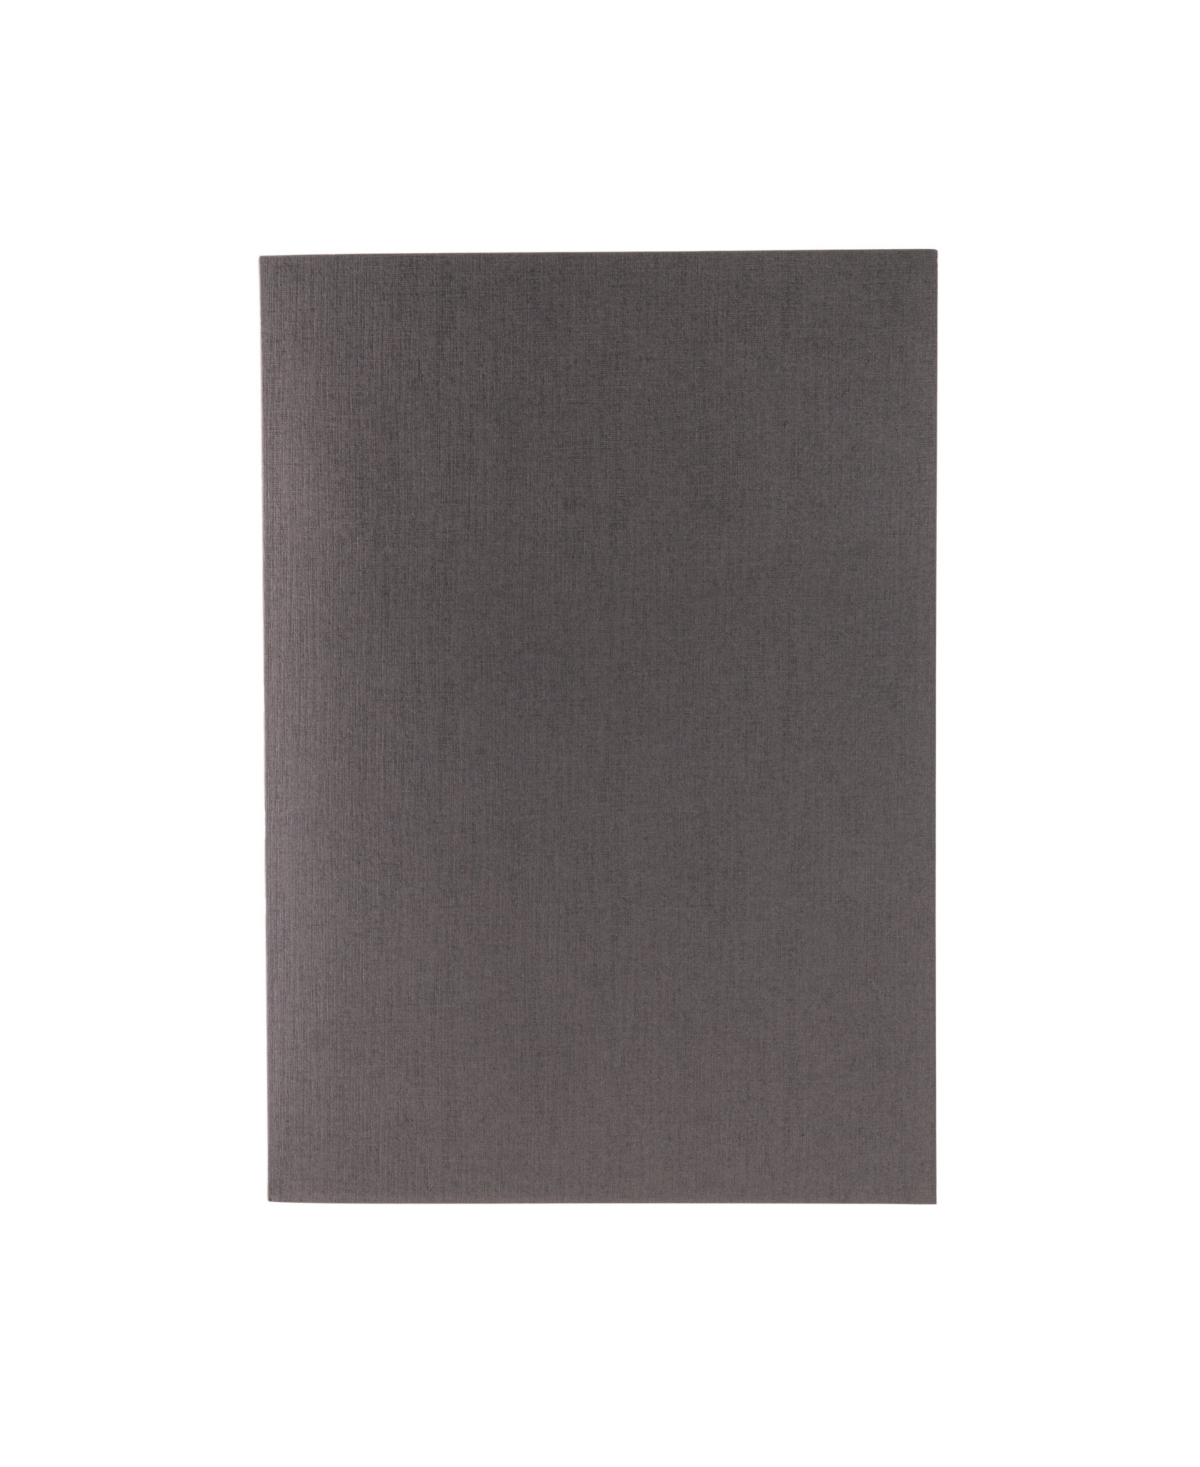 Ecoqua Plus Glue Bound Dotted A4 Notebook, 8.3" x 11.7" - Gray